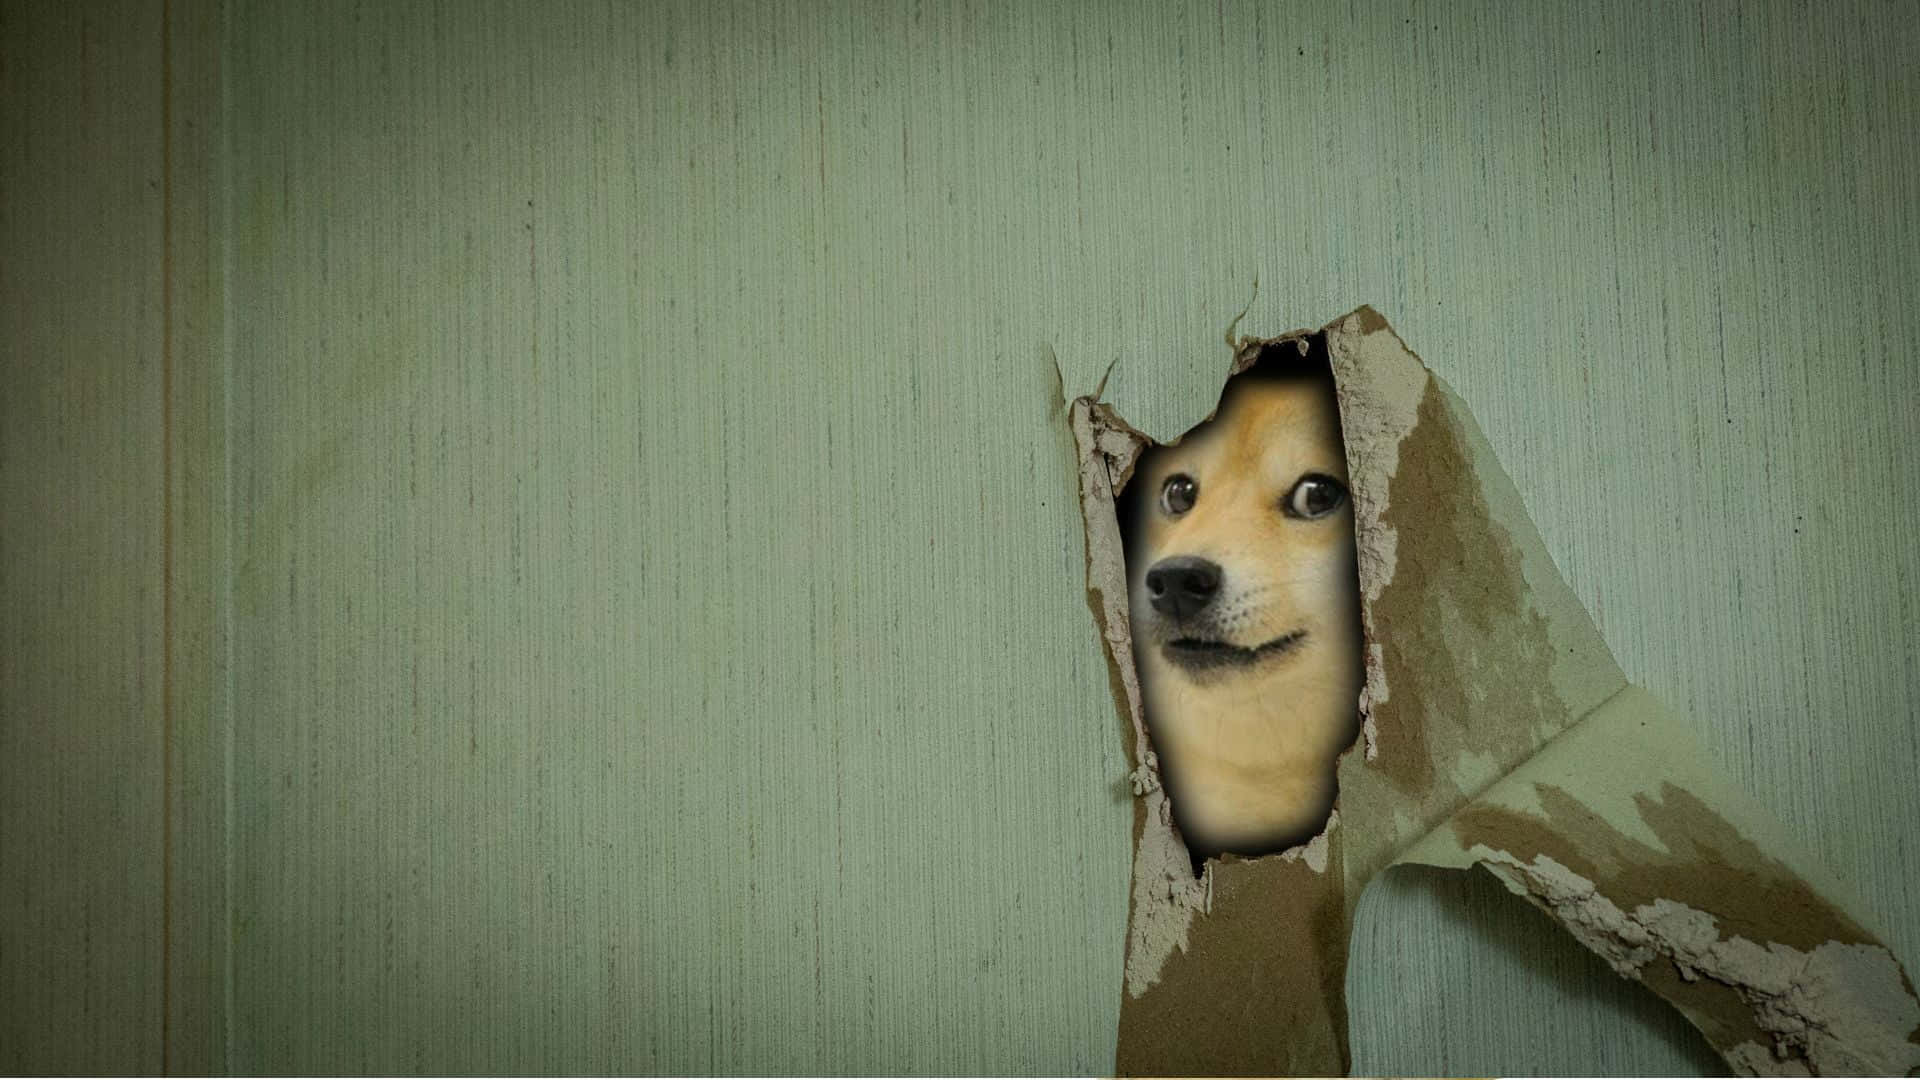 Imagende Un Perro Espiando En Un Meme